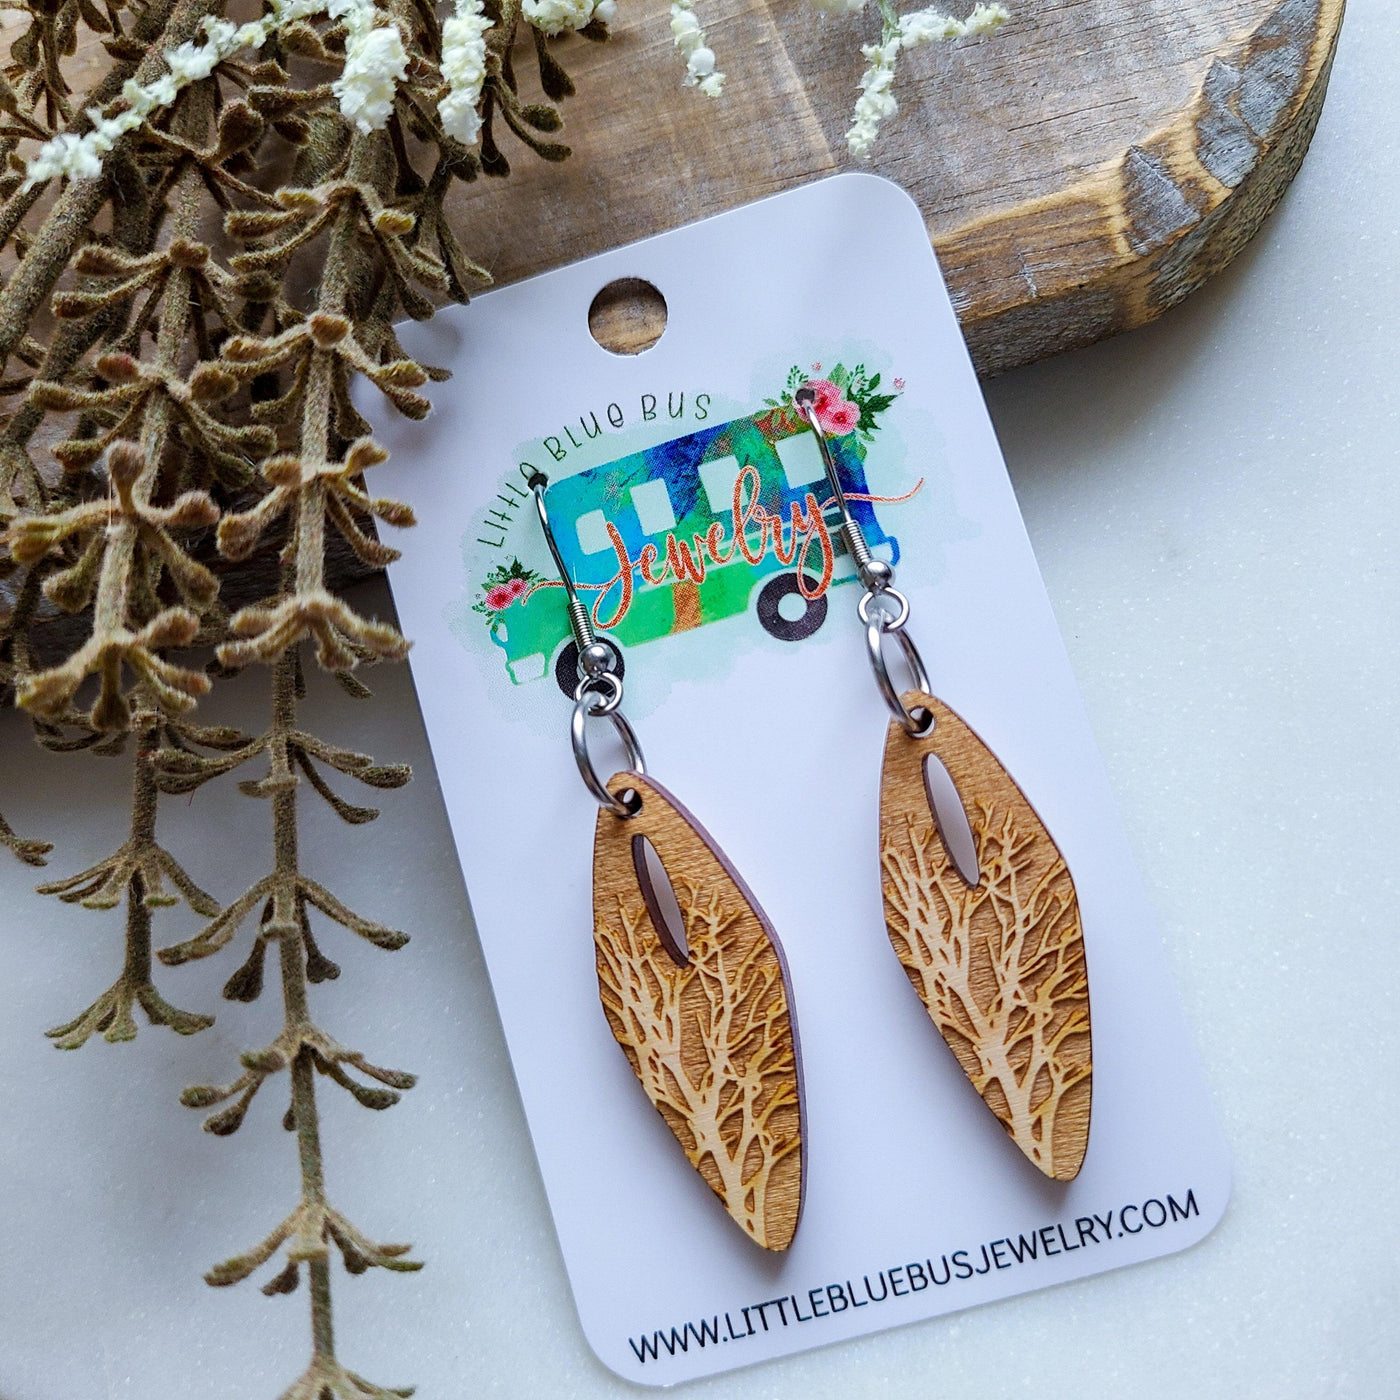 Wood Earrings - Stick to It | Earrings - Little Blue Bus Jewelry